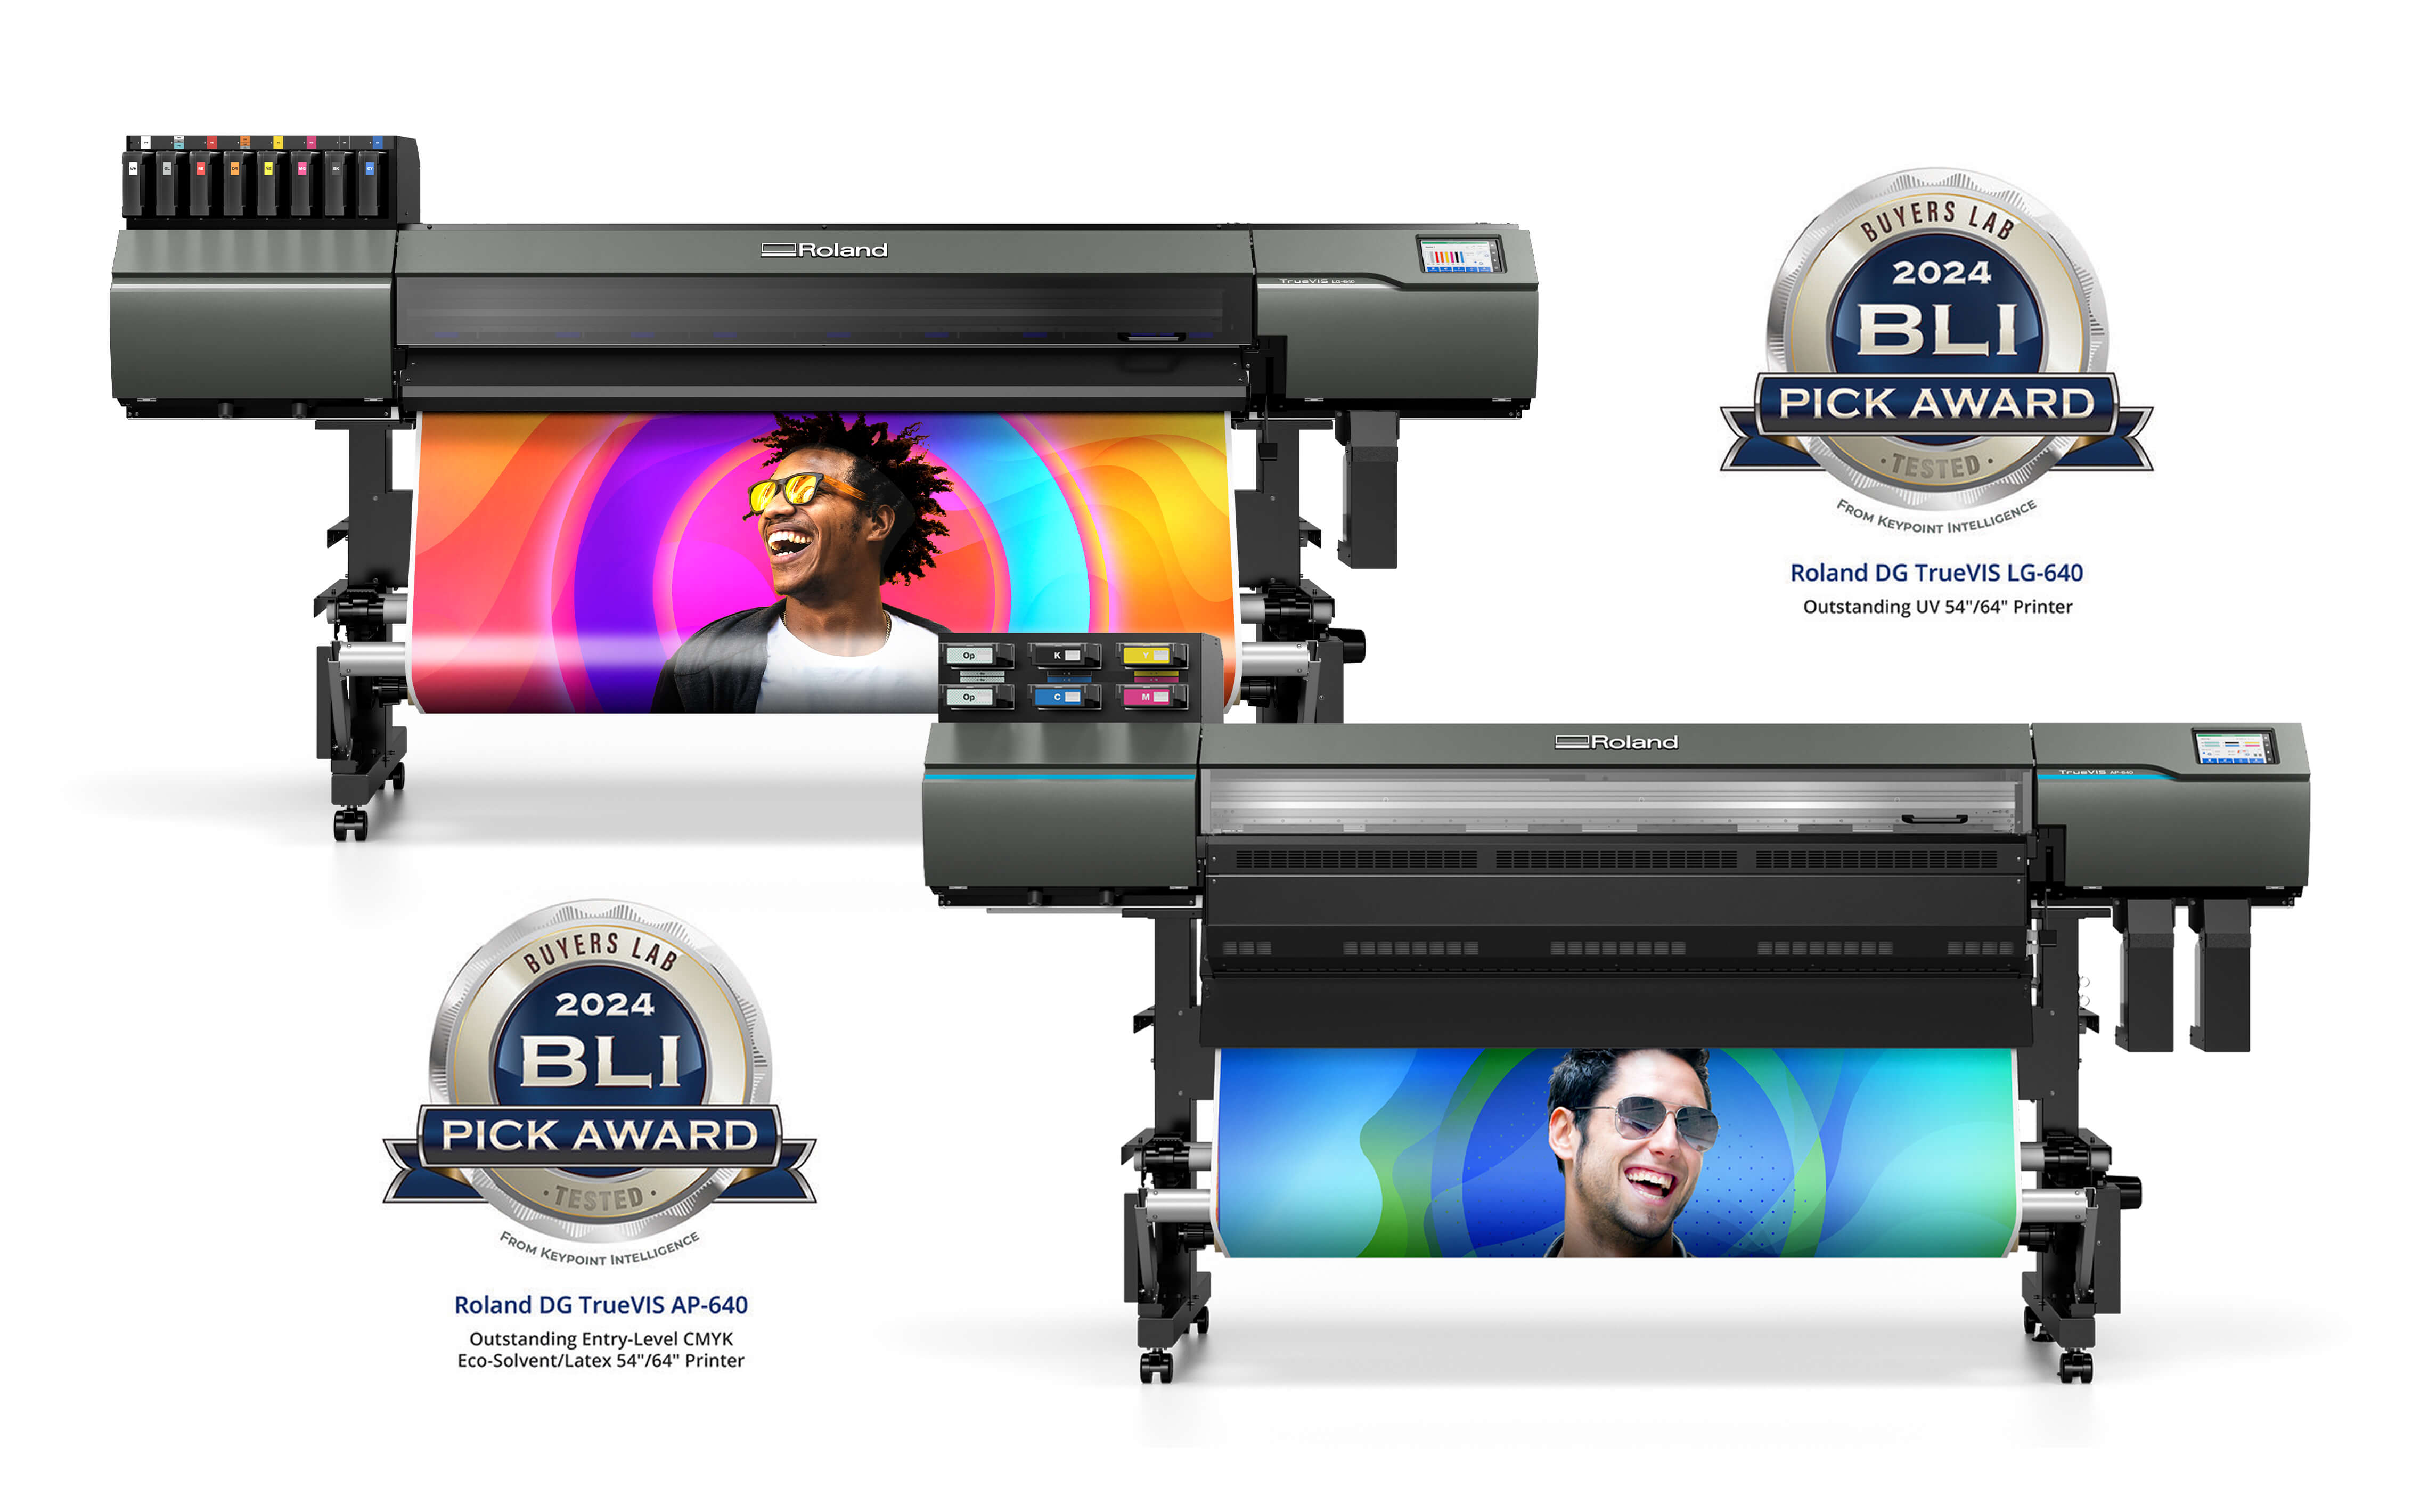 Roland DG's TrueVIS AP-640 Resin printer and LG-640 UV printer/cutter -- winners of prestigious BLI 2024 Pick Awards from Keypoint Intelligence